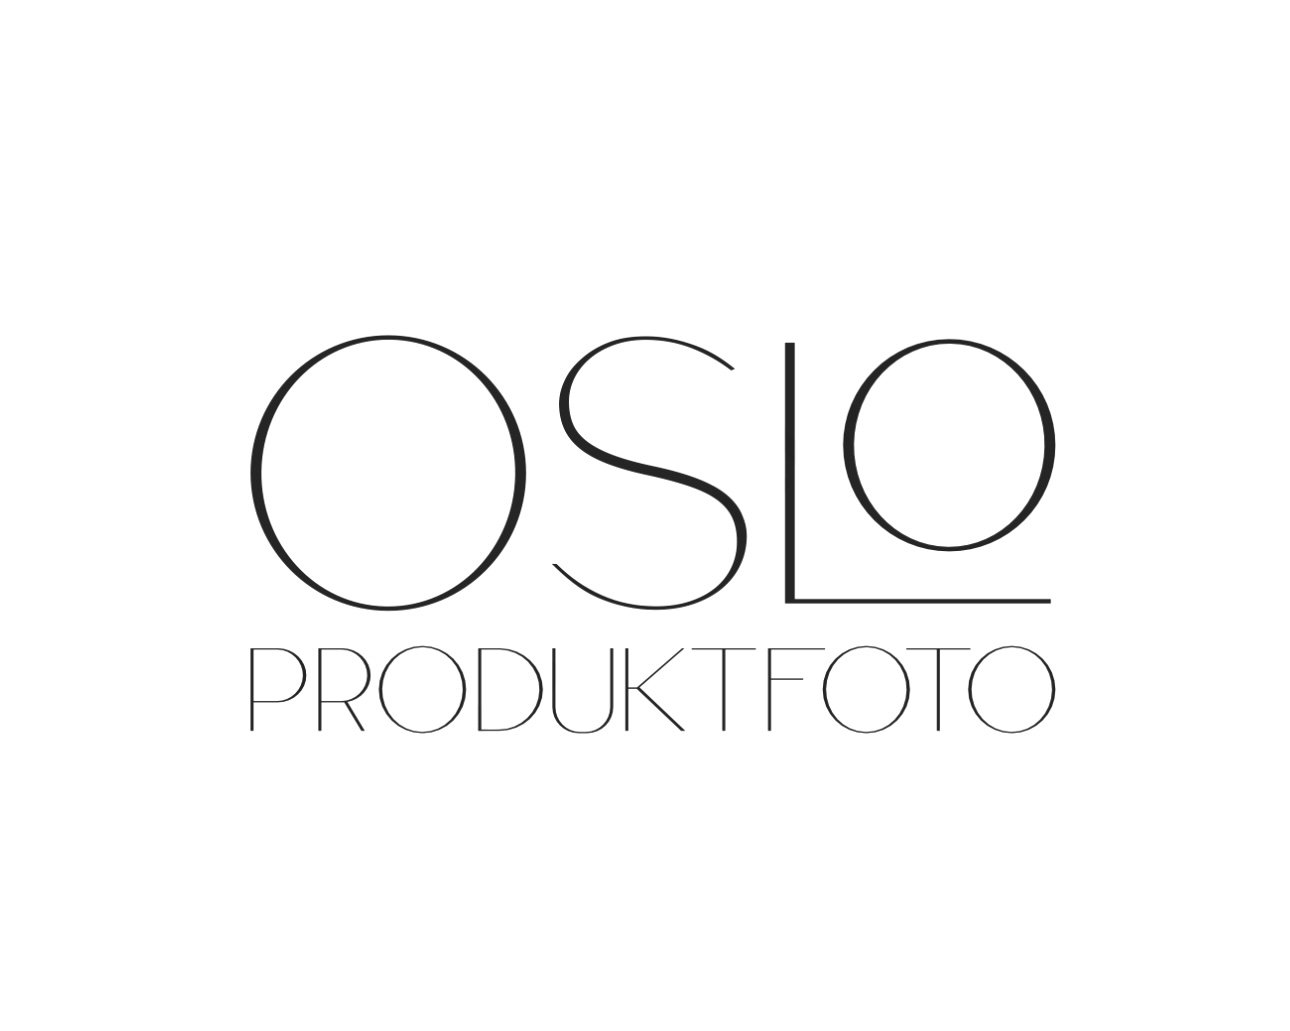 Oslo Produktfoto